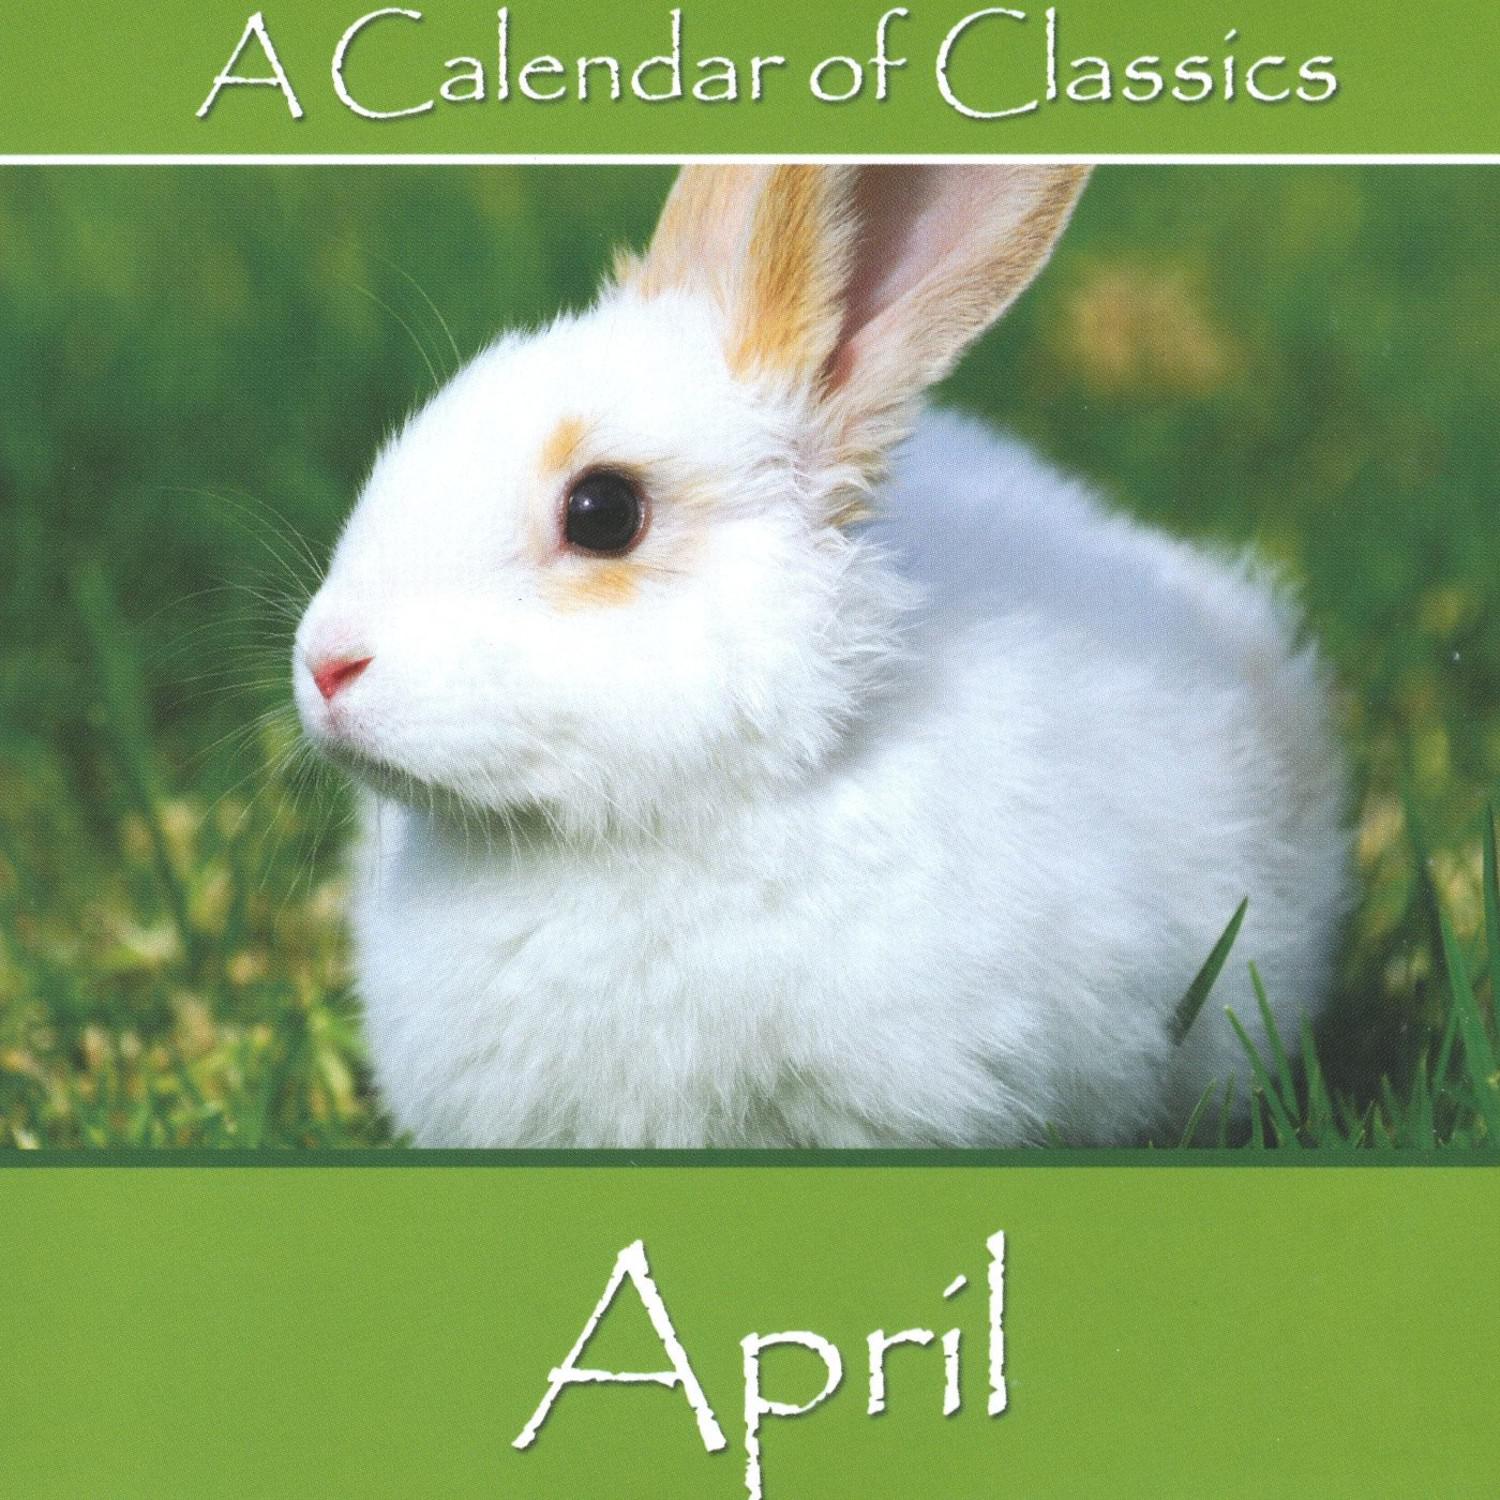 A Calendar Of Classics - April